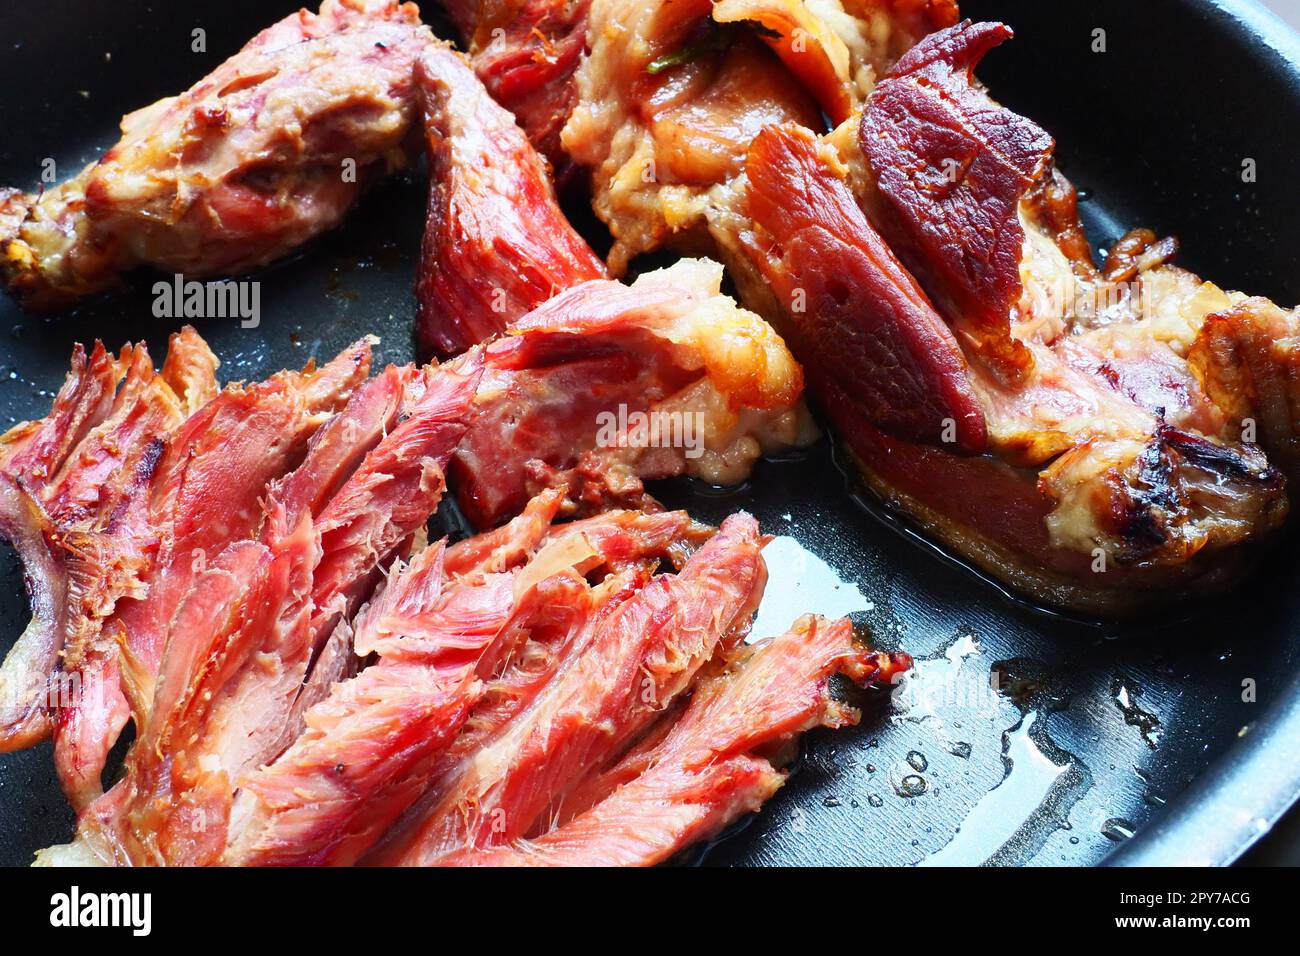 Épaule ou genou de porc fumé rôti. Délicieuse viande sur une plaque de cuisson noire avec des gouttes d'huile végétale, sortie du four. Spécialité de porc pour le dîner dans un restaurant et déjeuner en famille. Viande rouge Banque D'Images